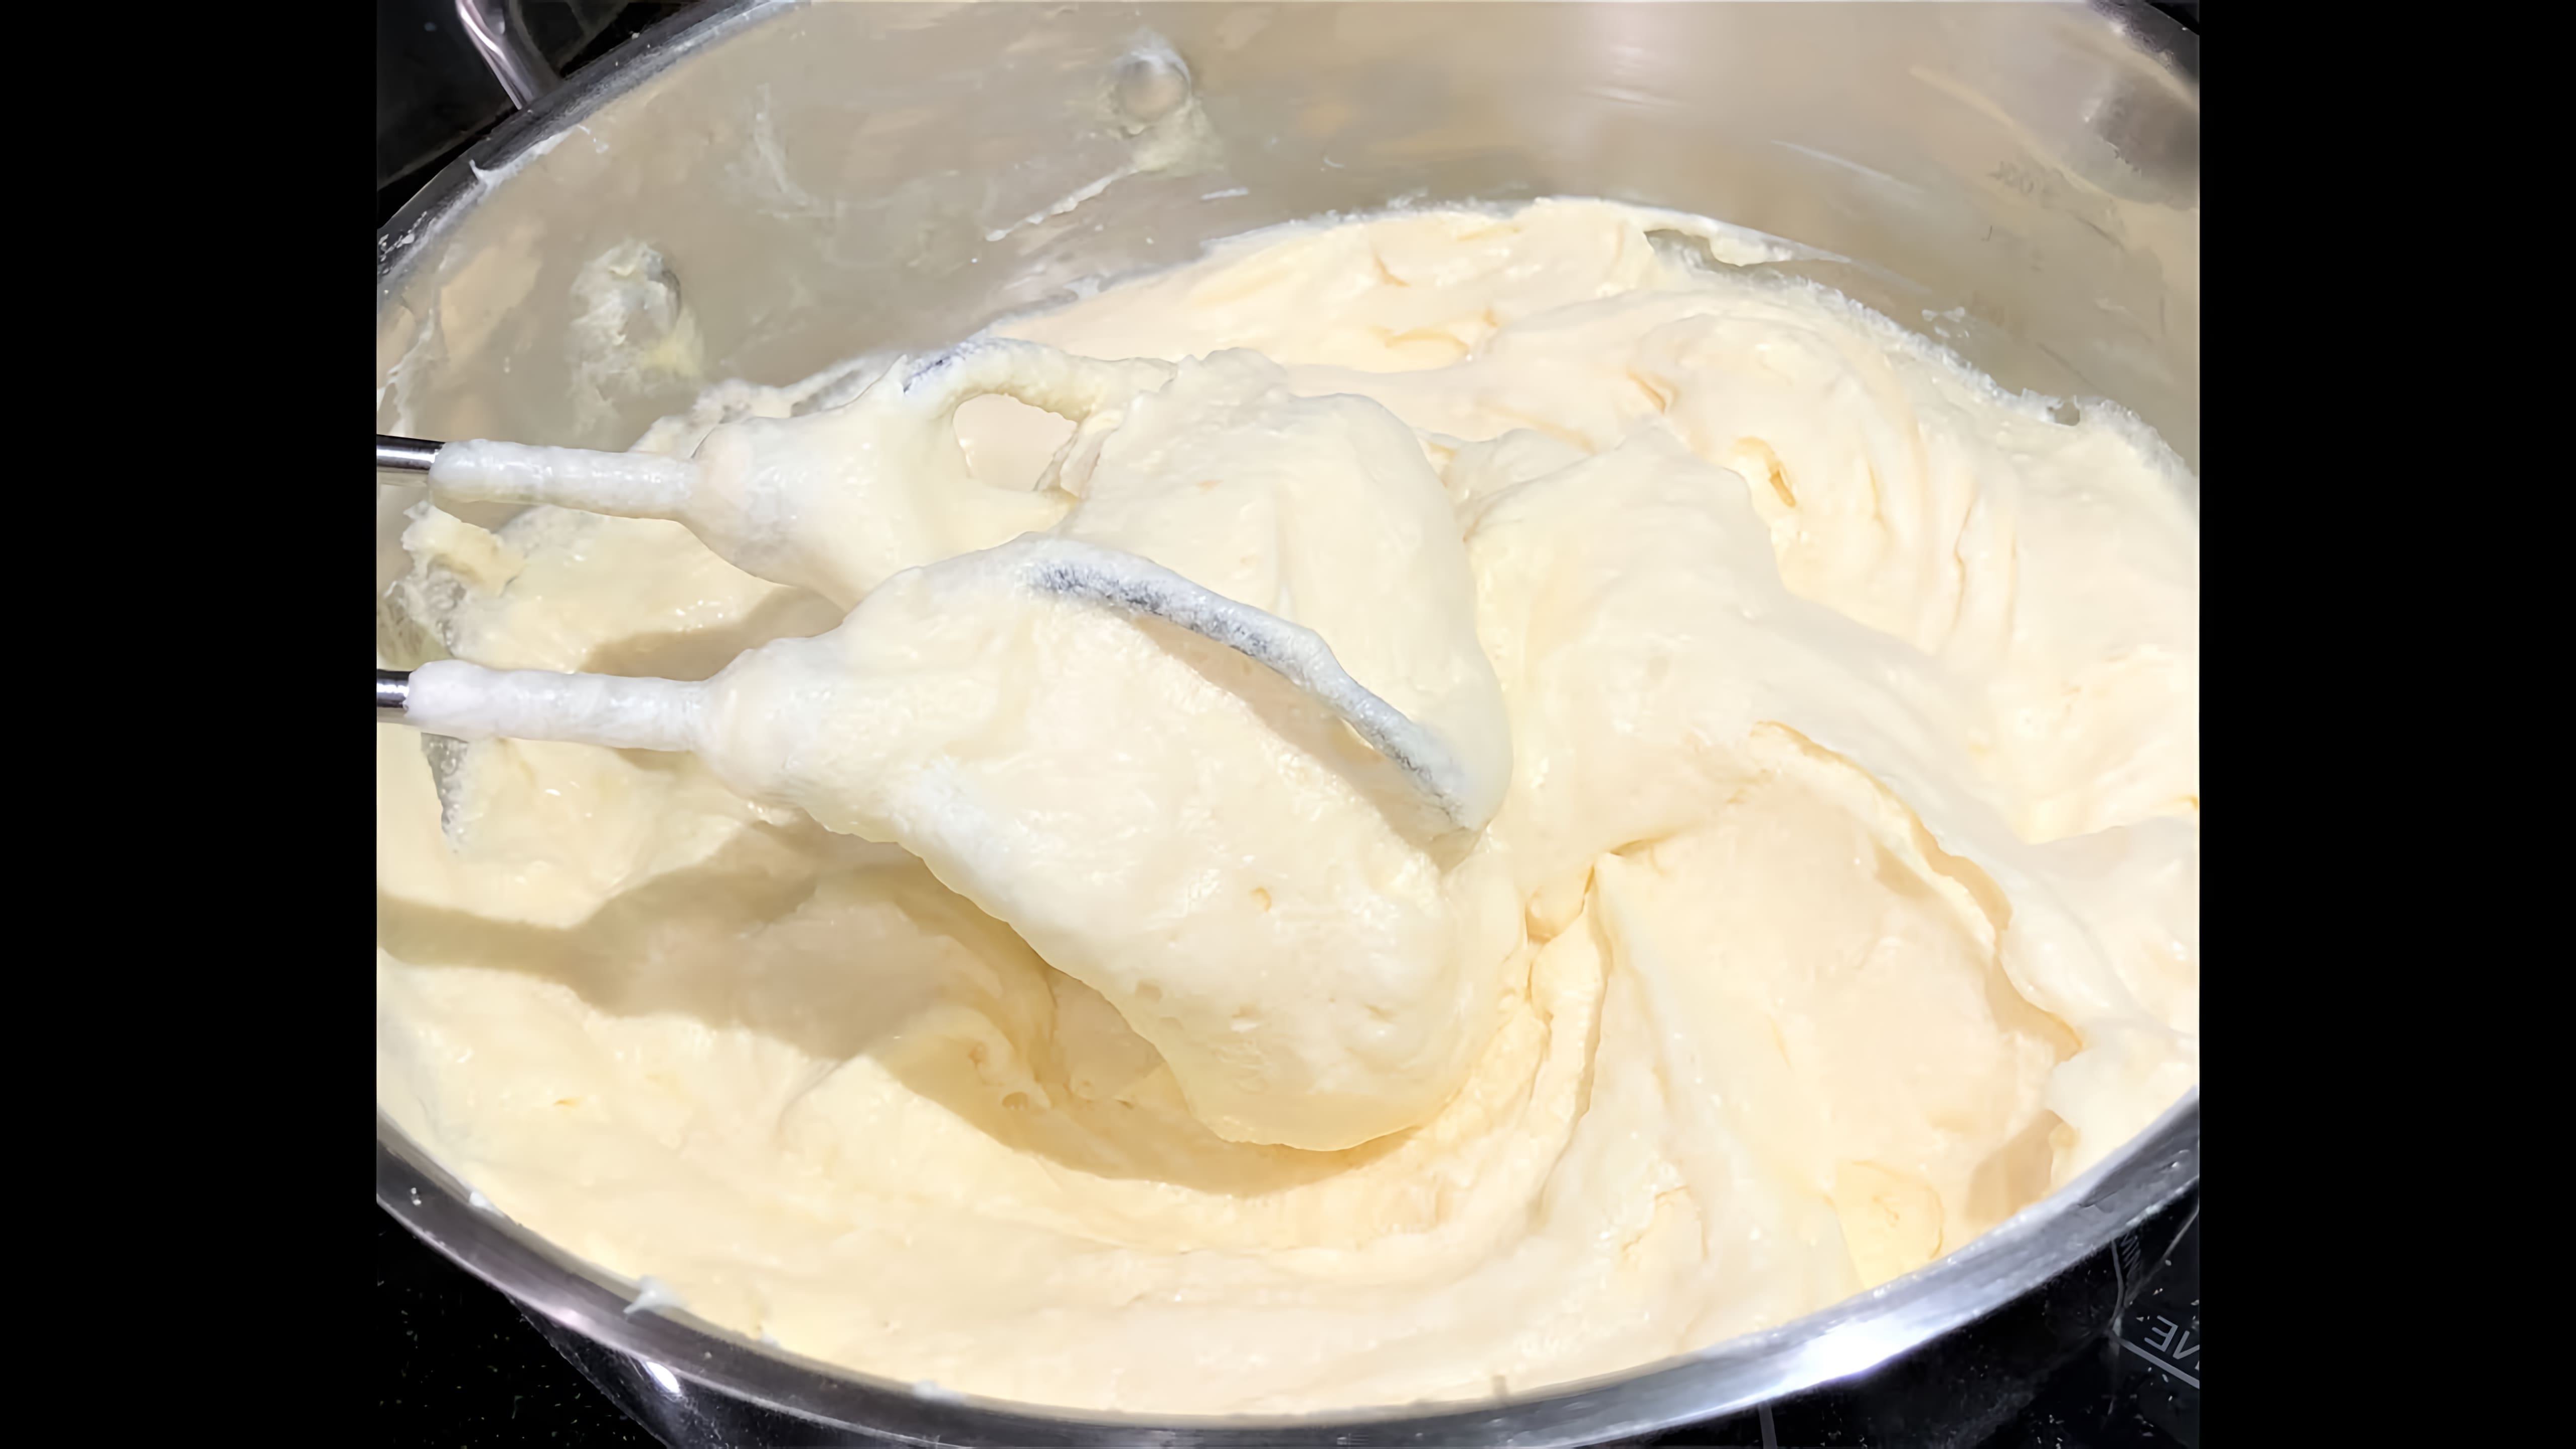 В этом видео демонстрируется процесс приготовления заварного крема для наполеона